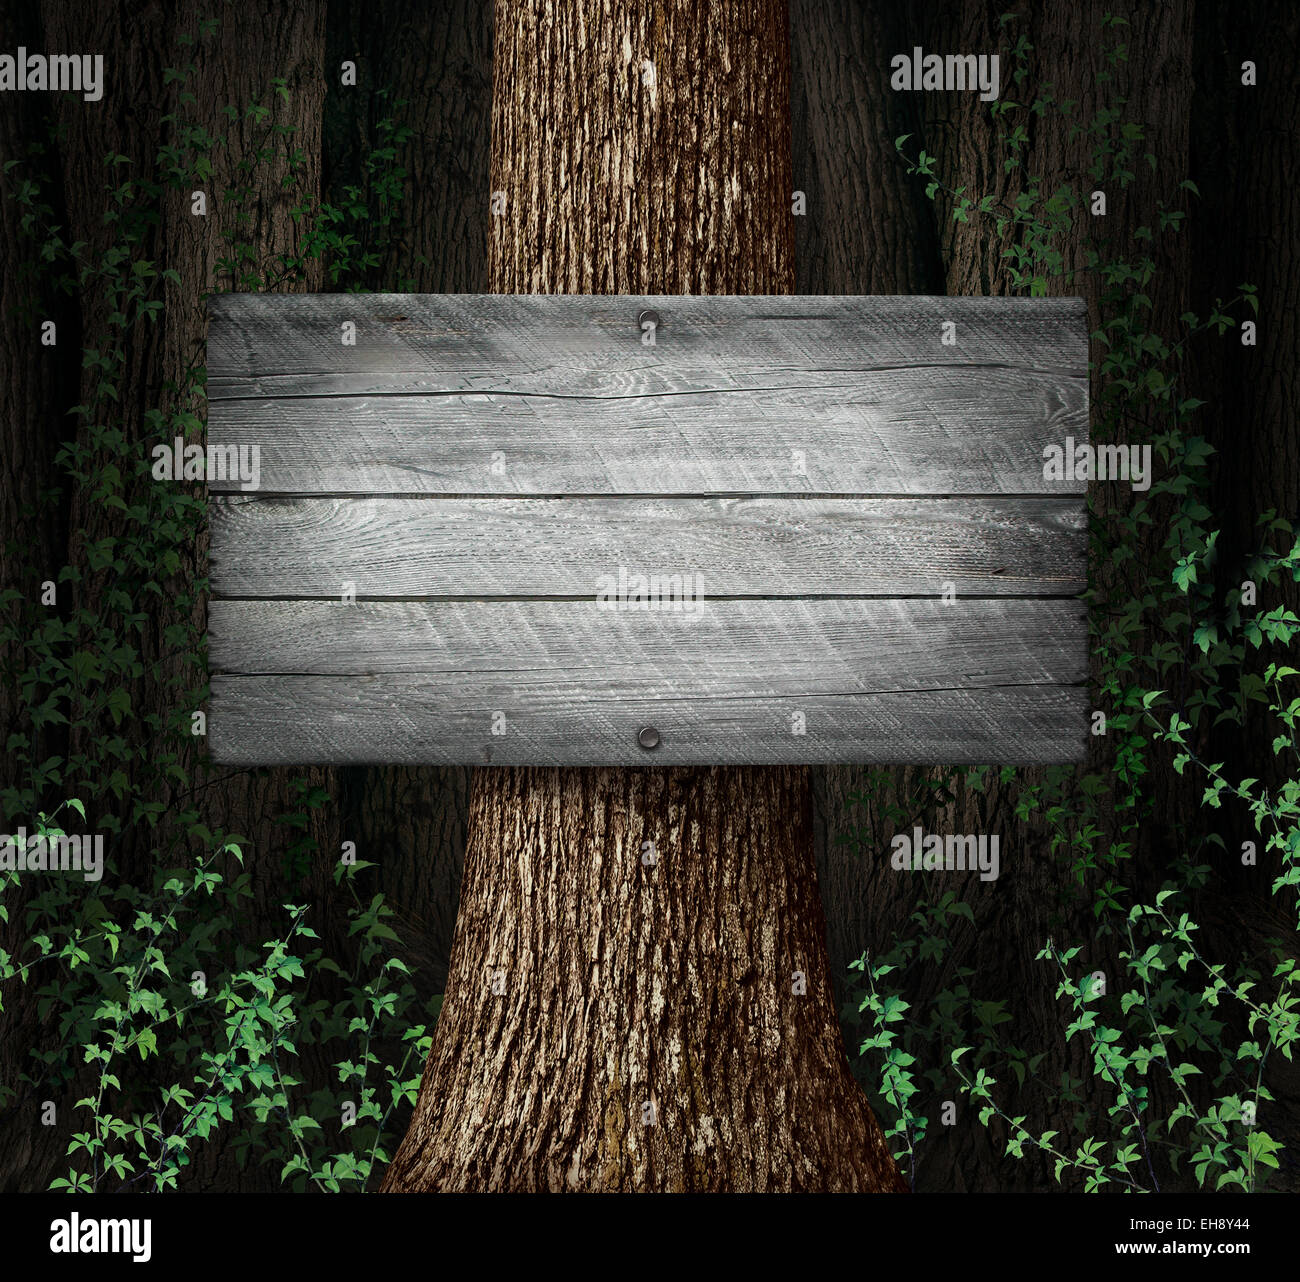 Signe vierge forêt contexte comme un vieux groupe d'arbres épais avec une planche en bois rustique comme un symbole pour la publicité et la commercialisation de la nature d'un message. Banque D'Images